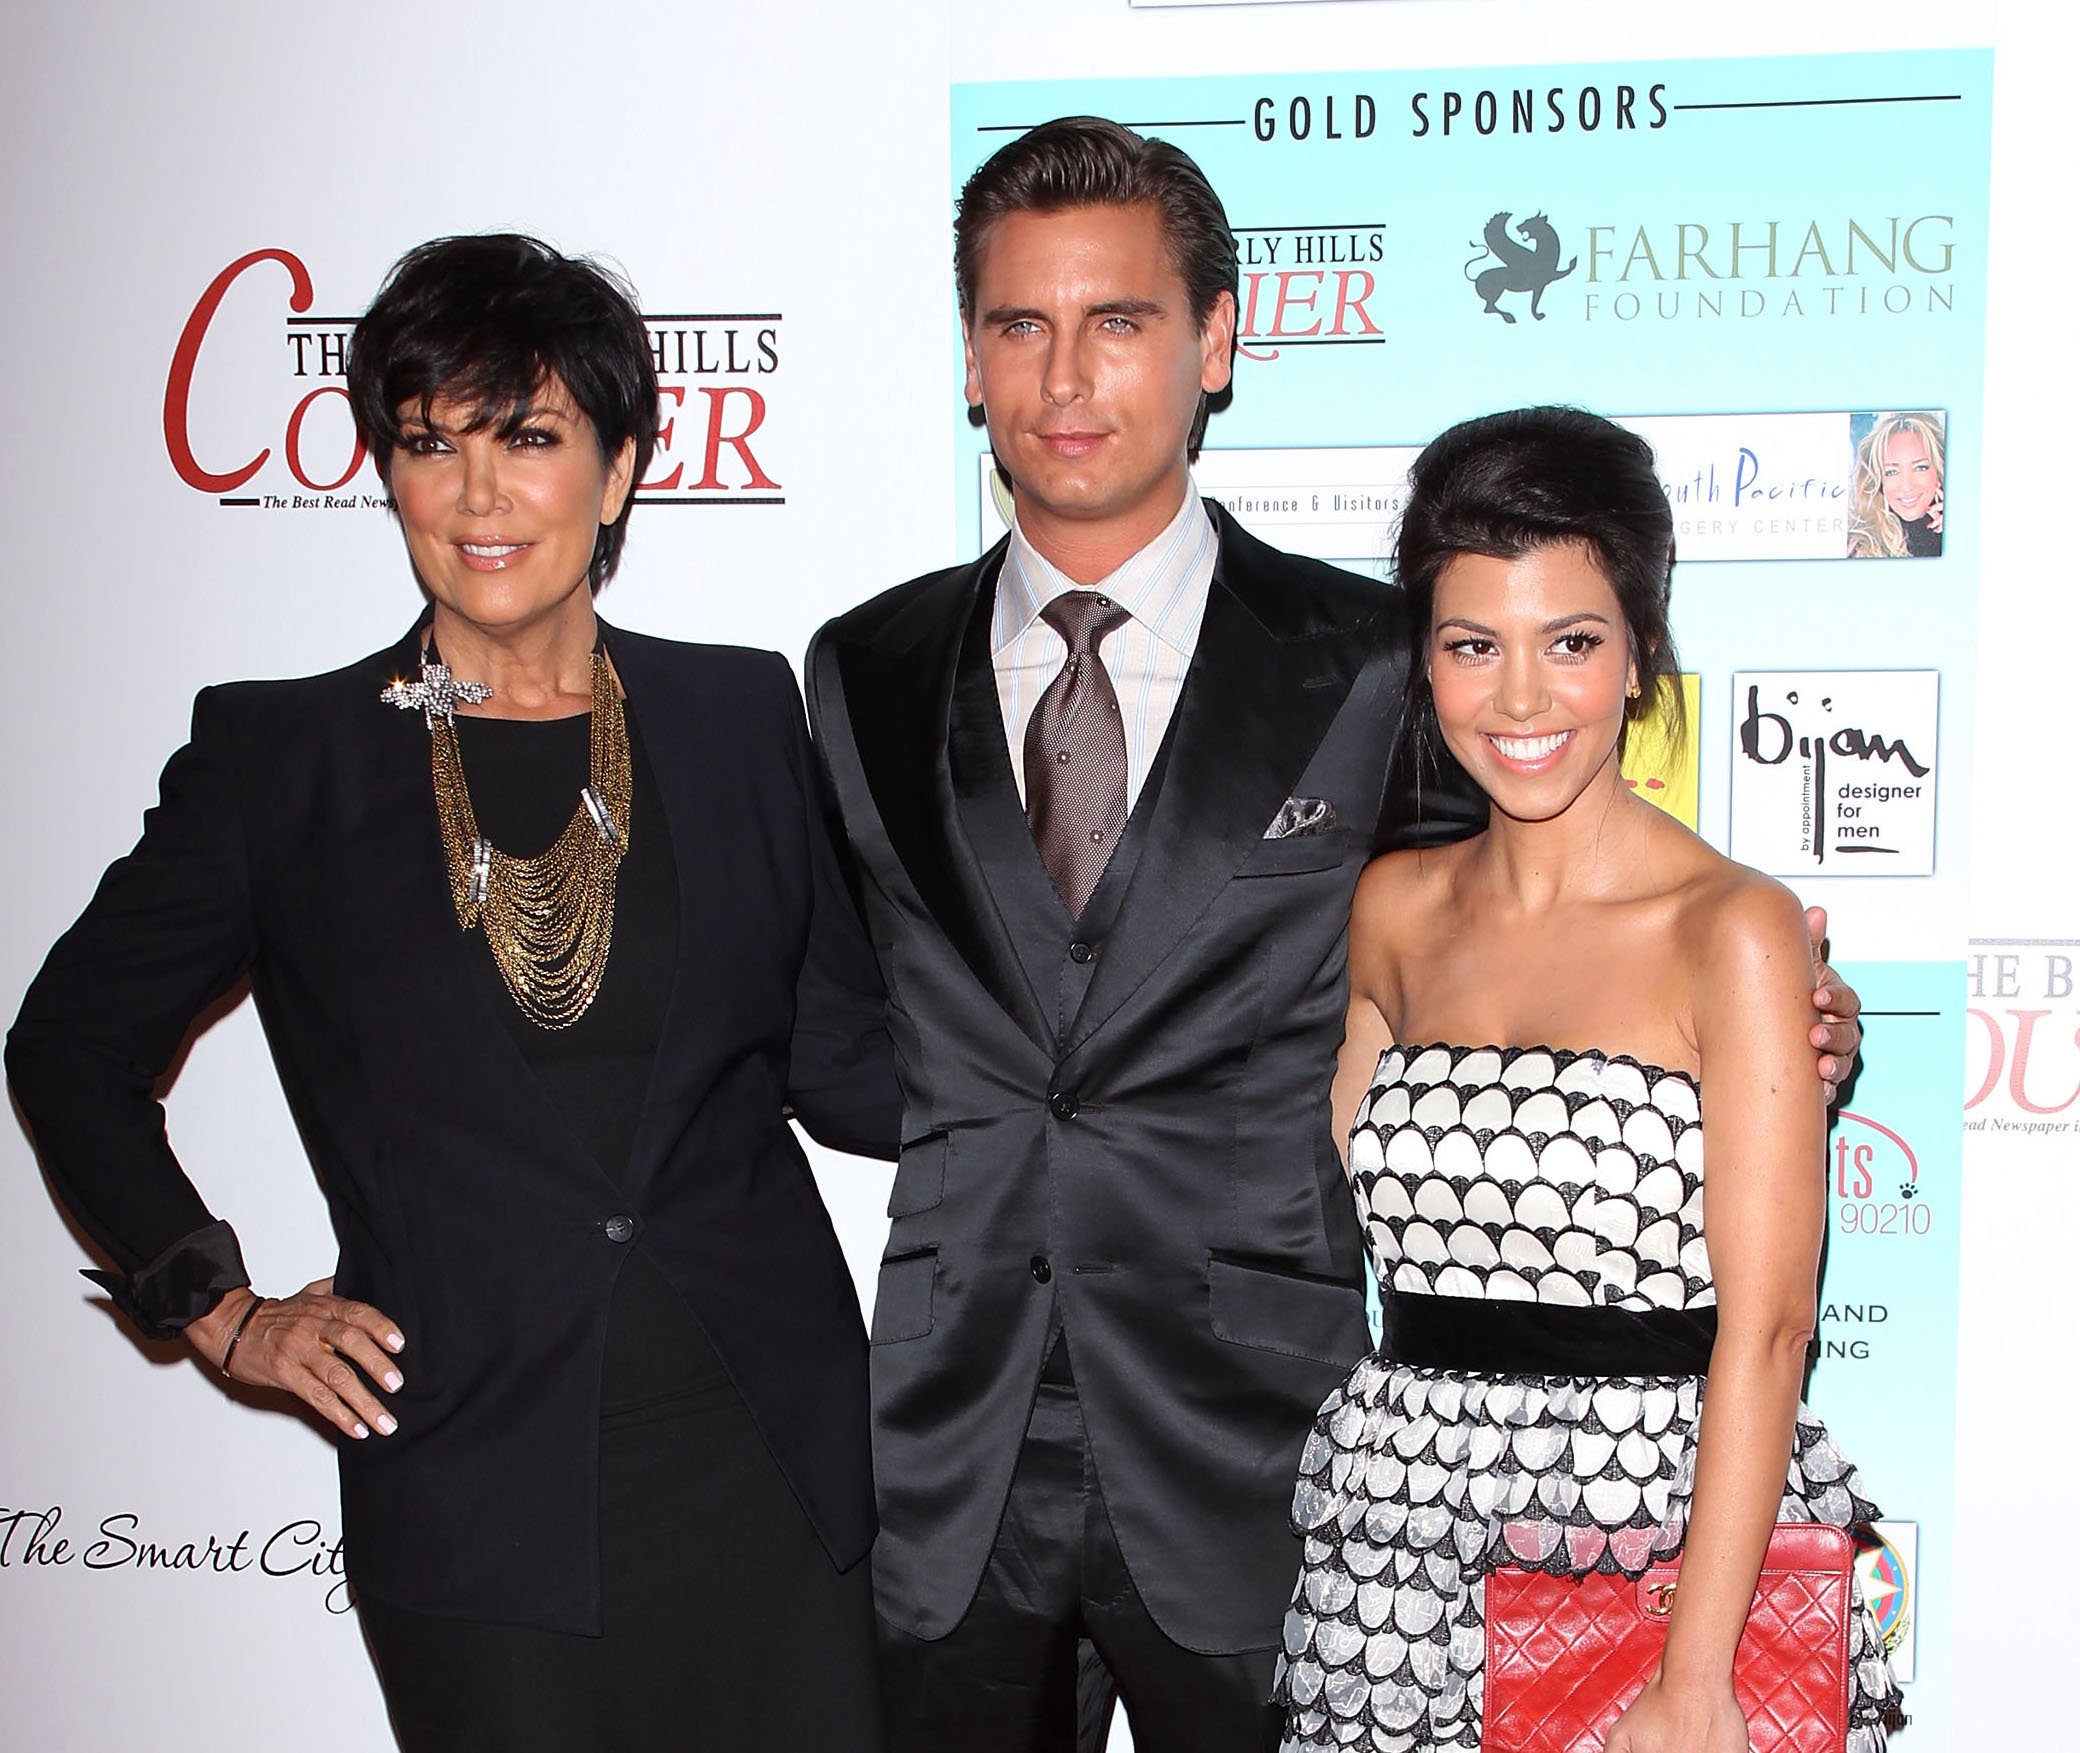 Kris Jenner, Scott Disick, and Kourtney Kardashian attending the Taste Of Beverly Hills in 2010 